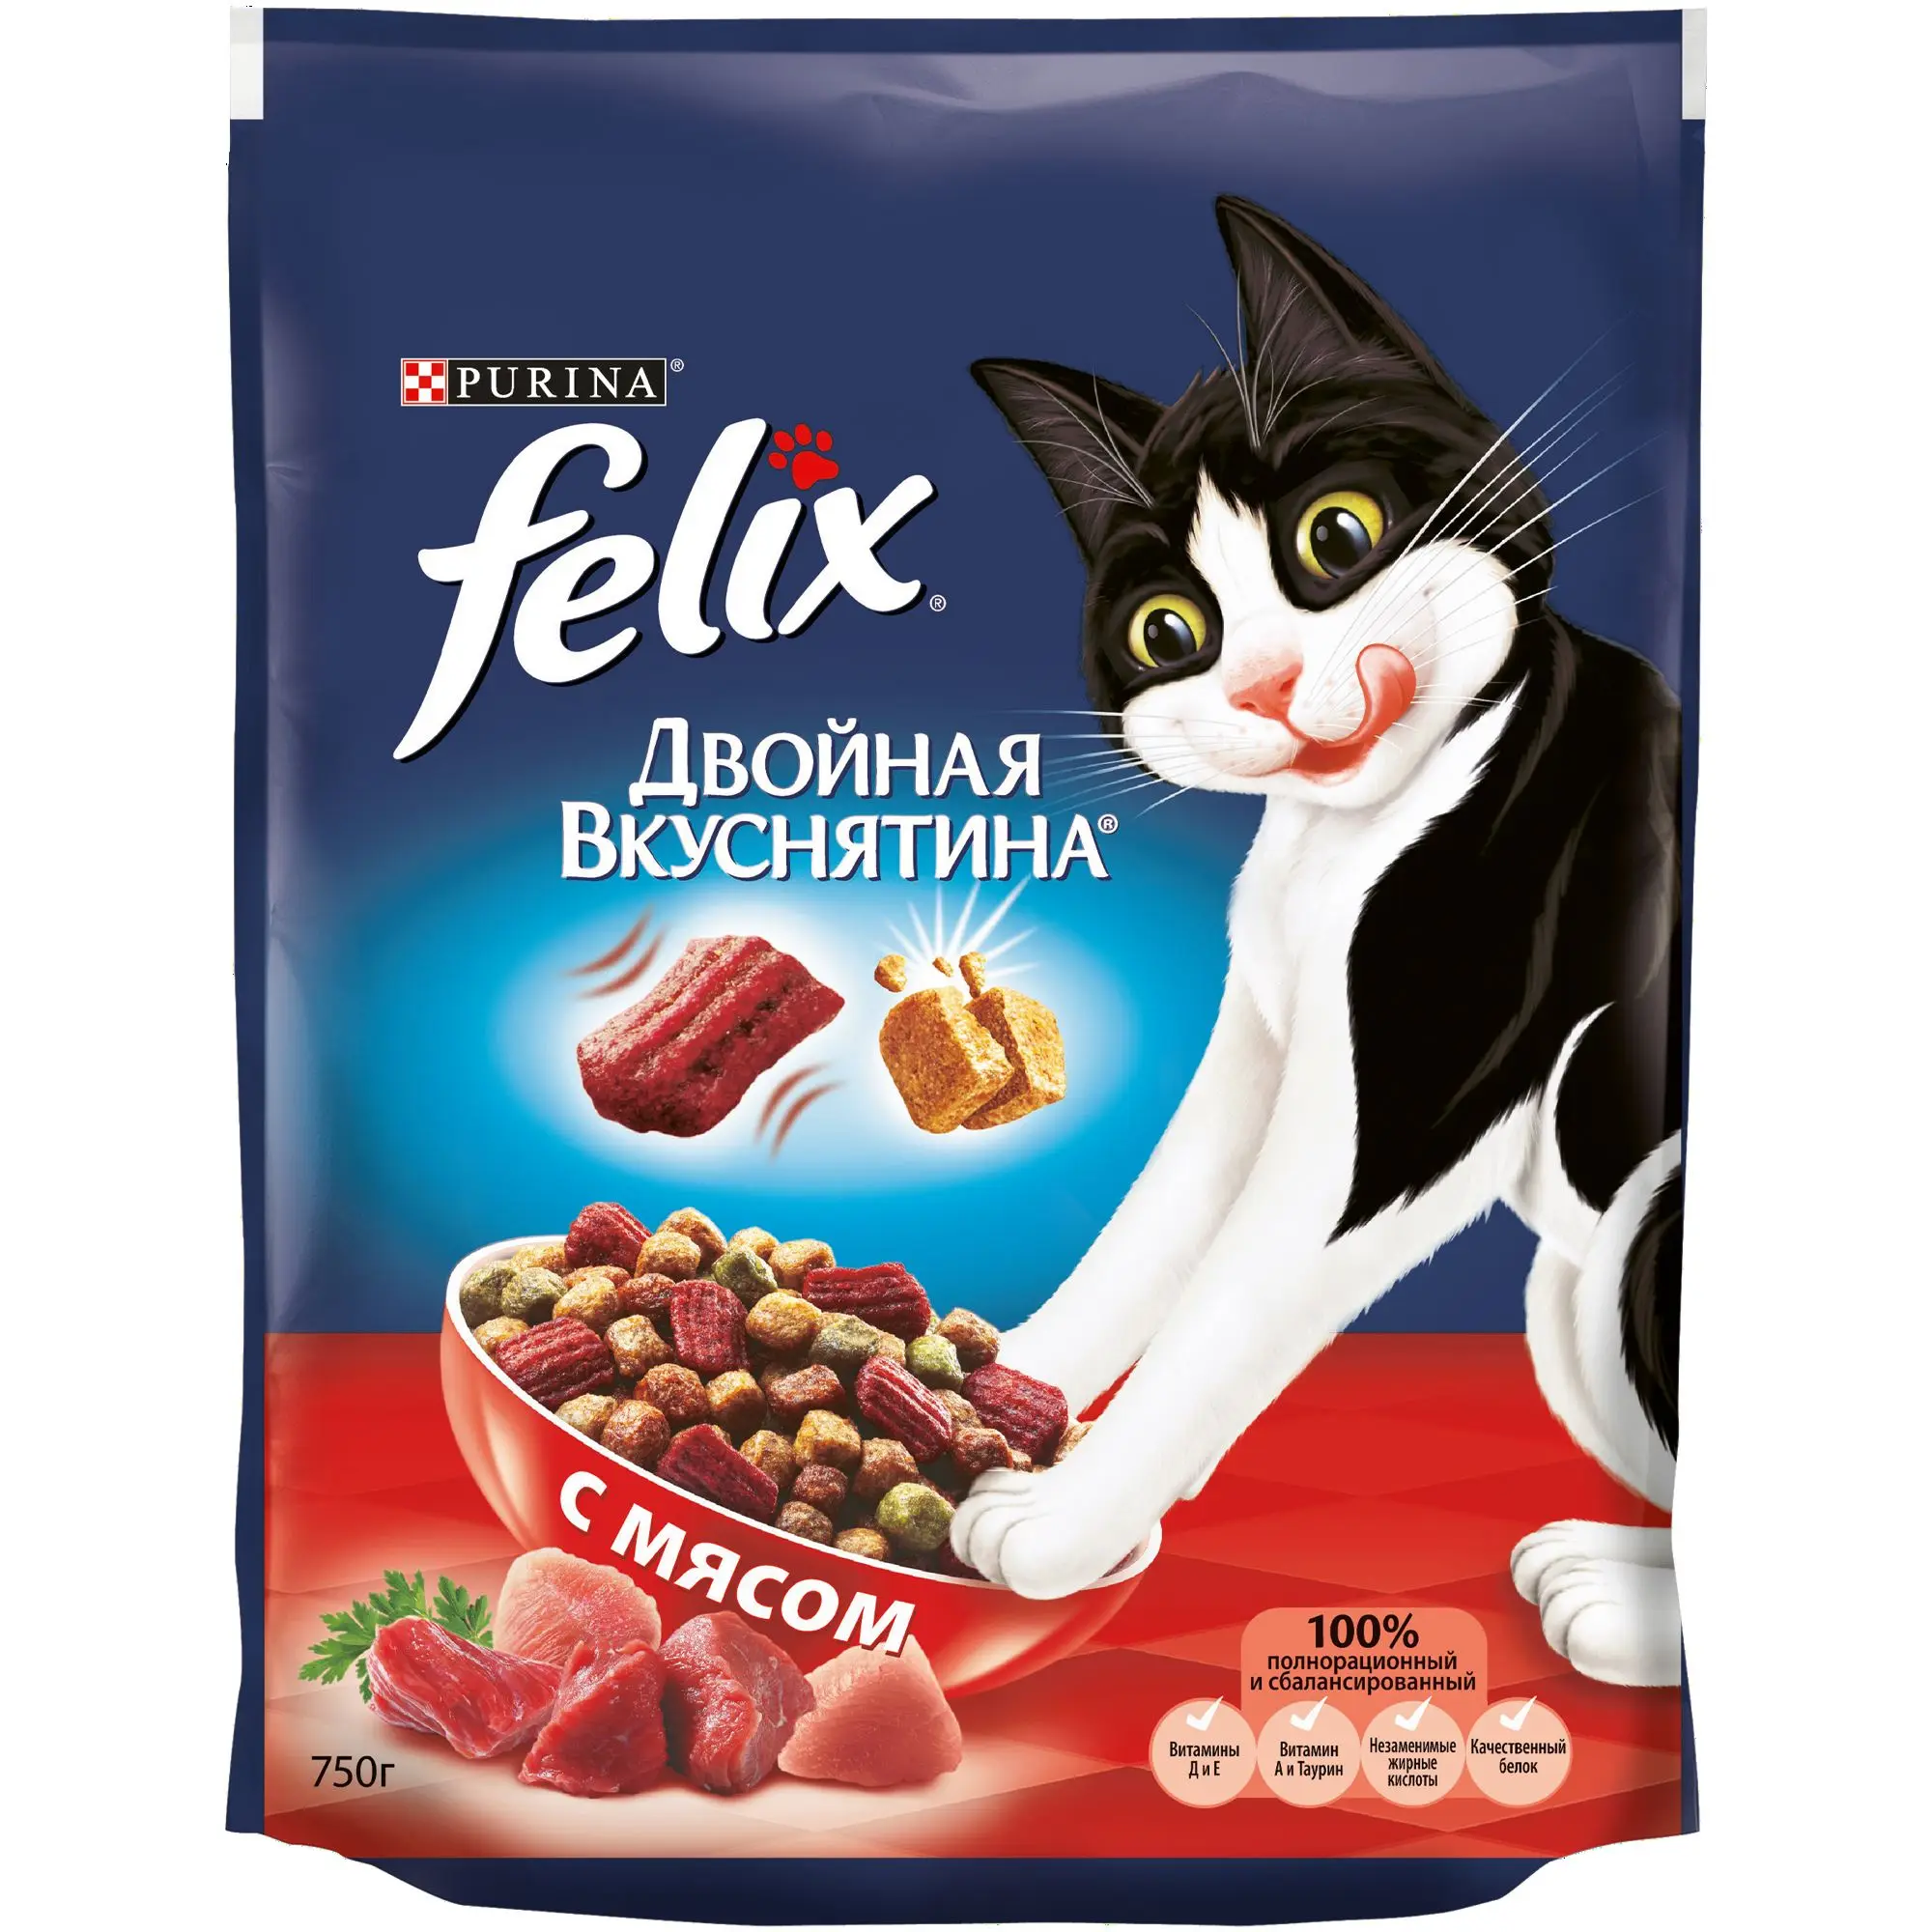 Сухой корм Felix Двойная вкуснятина для кошек, с мясом, Пакет, 750 г